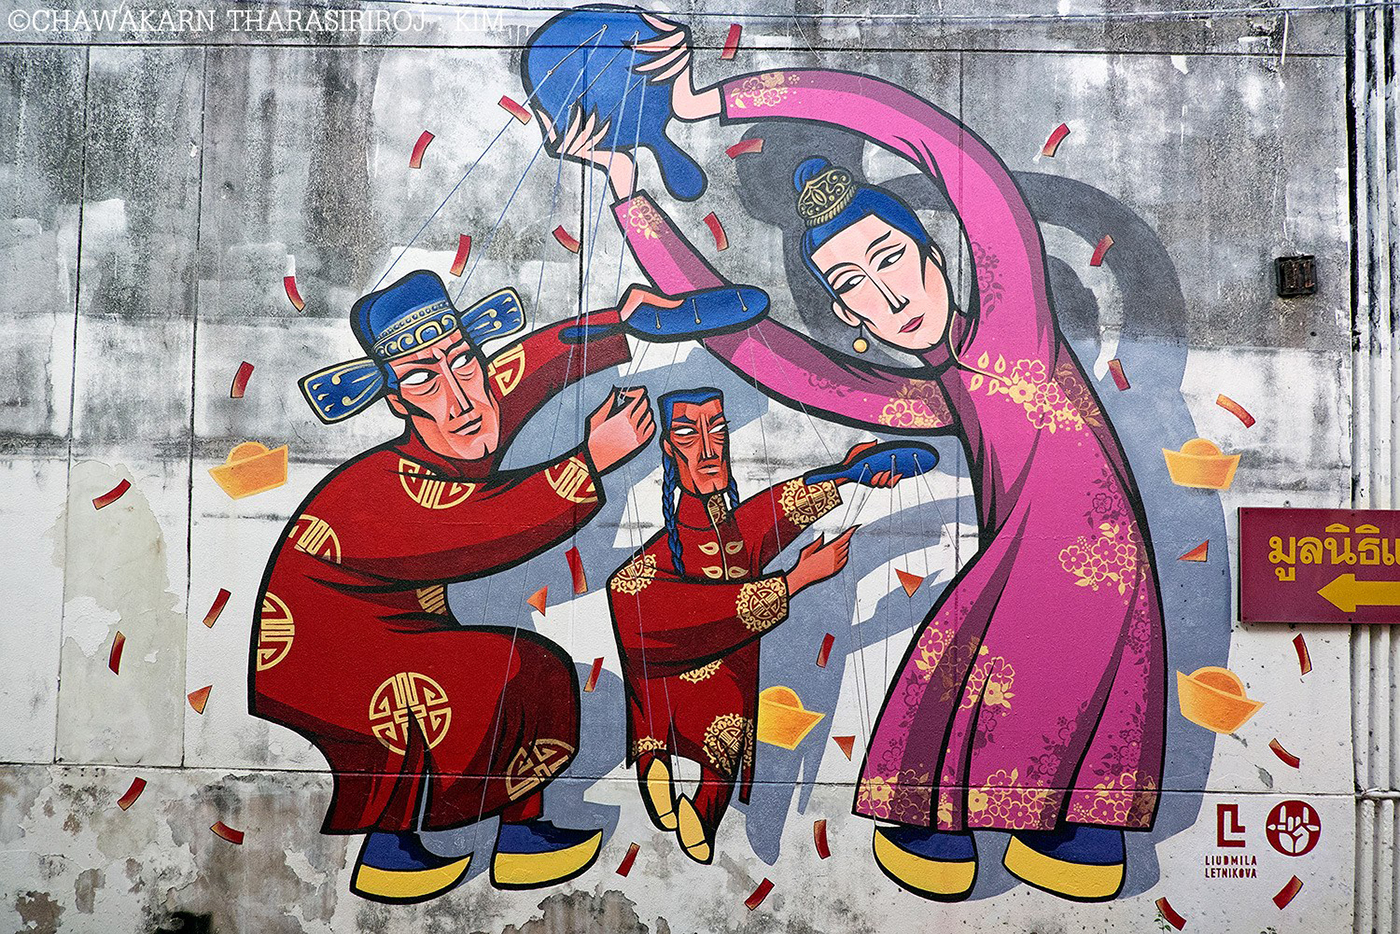 стритарт streetart art chinese culture wallart Mural paint puppet marionette